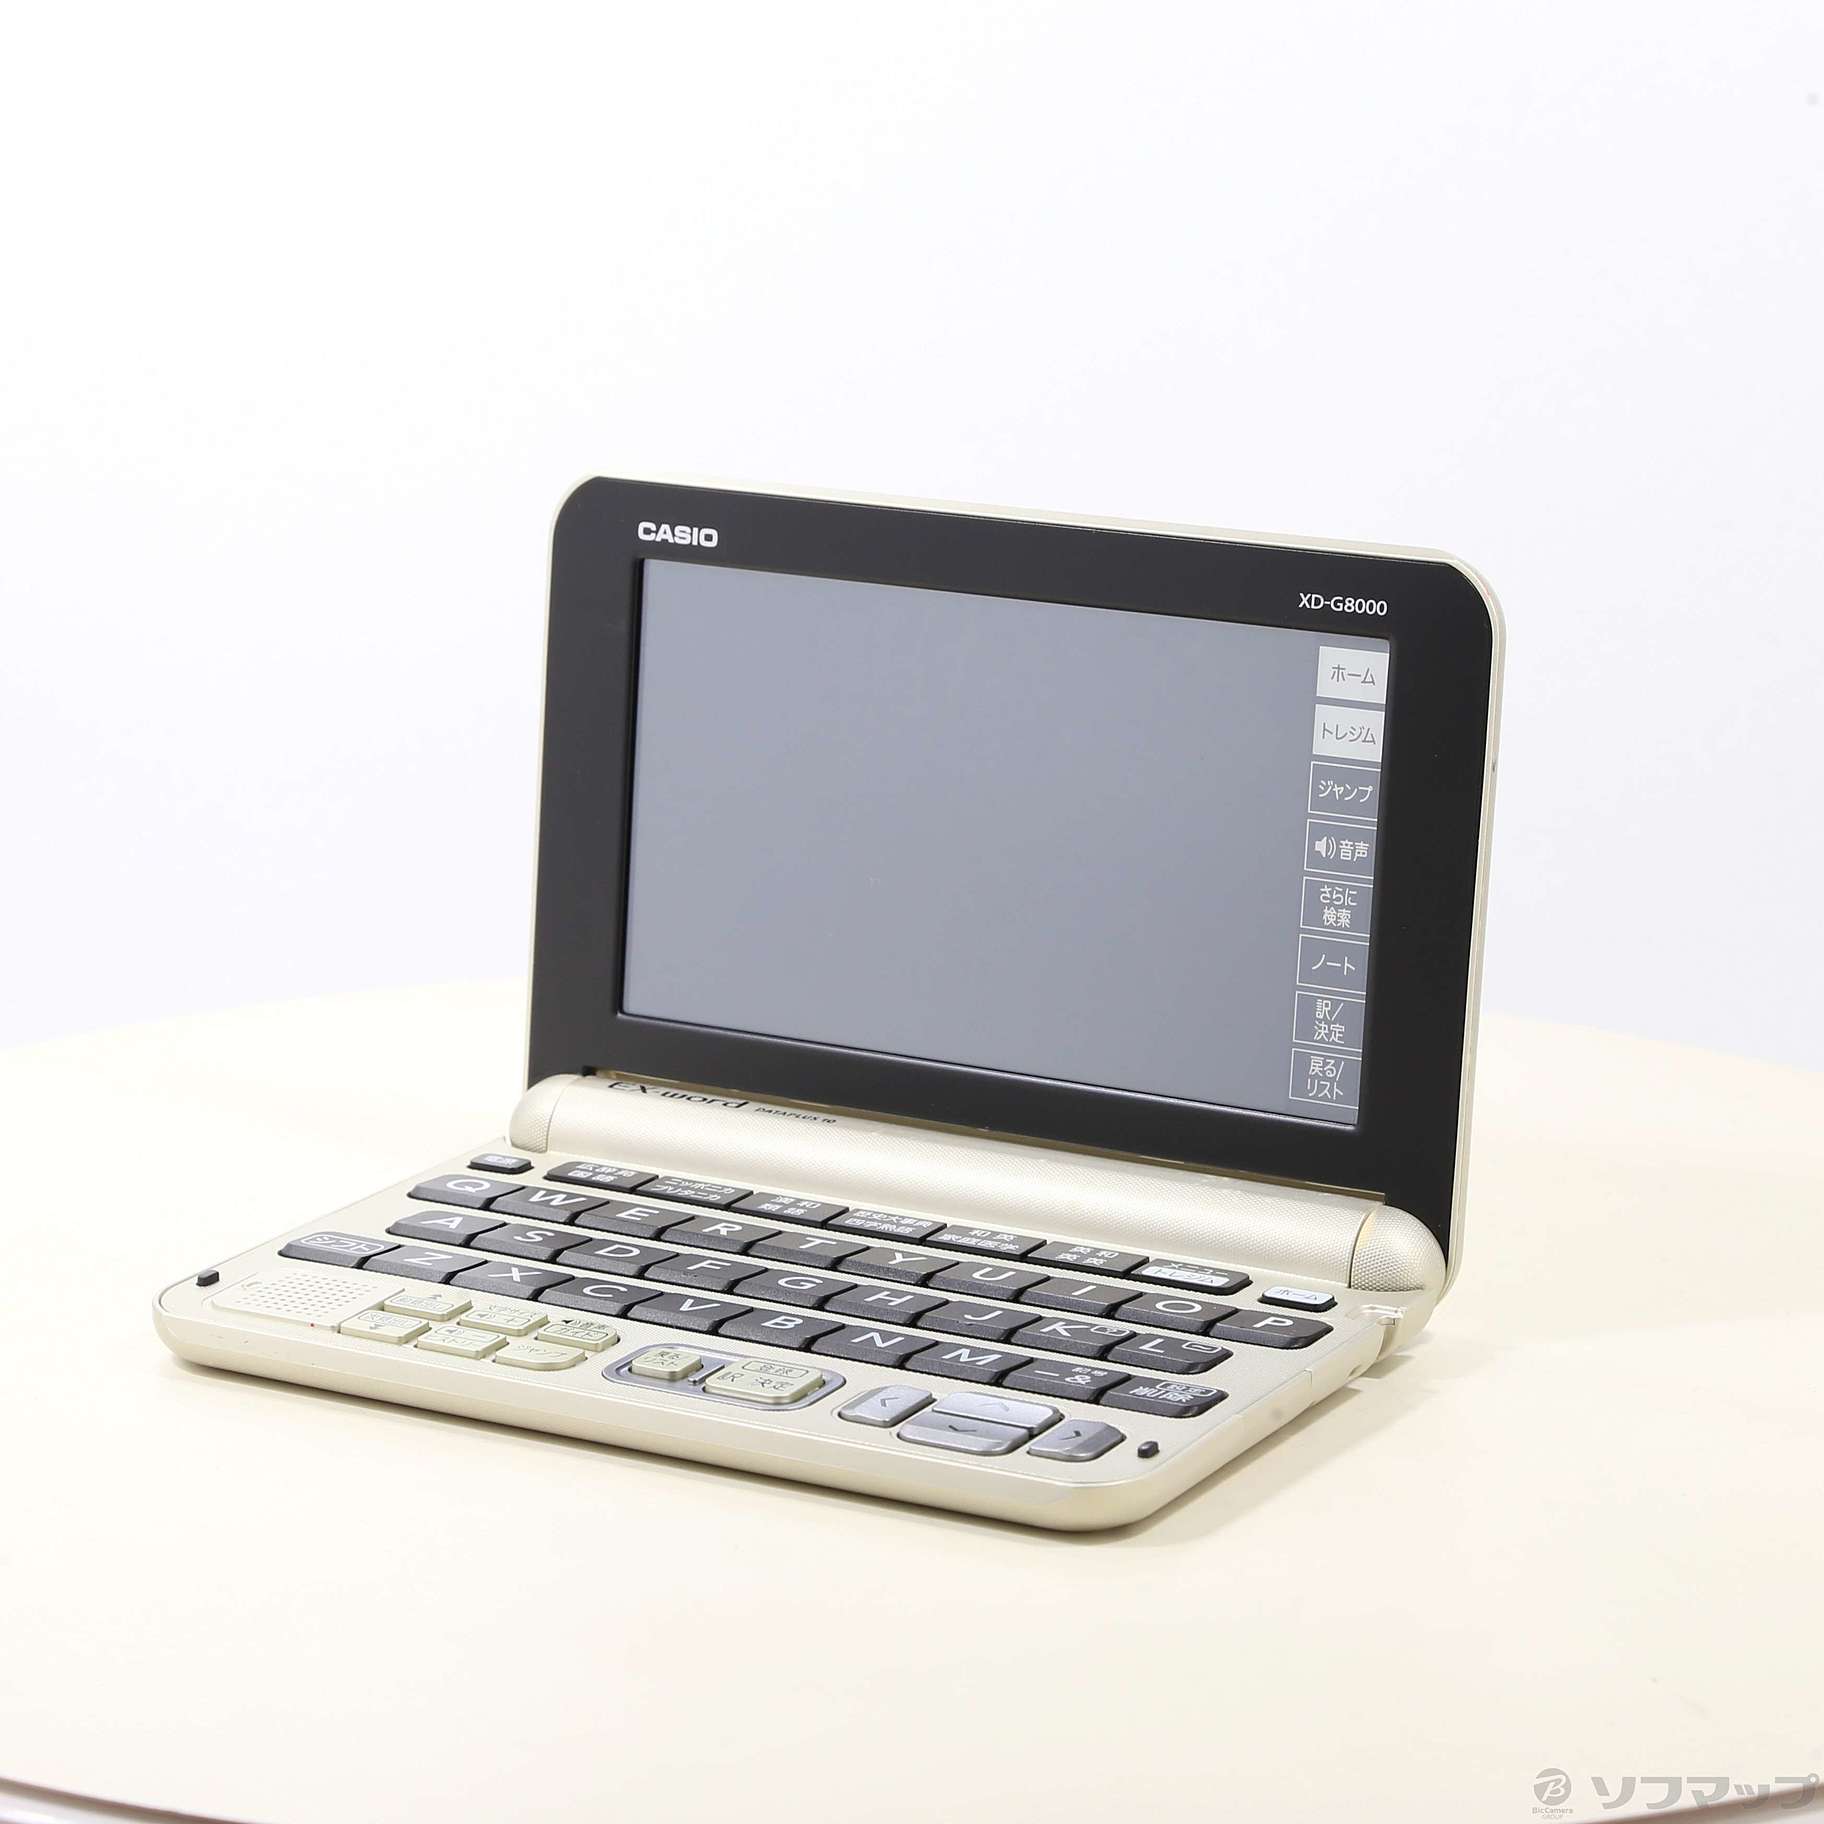 カシオ 電子辞書 エクスワード 生活・ビジネスモデル XD-G8000GD